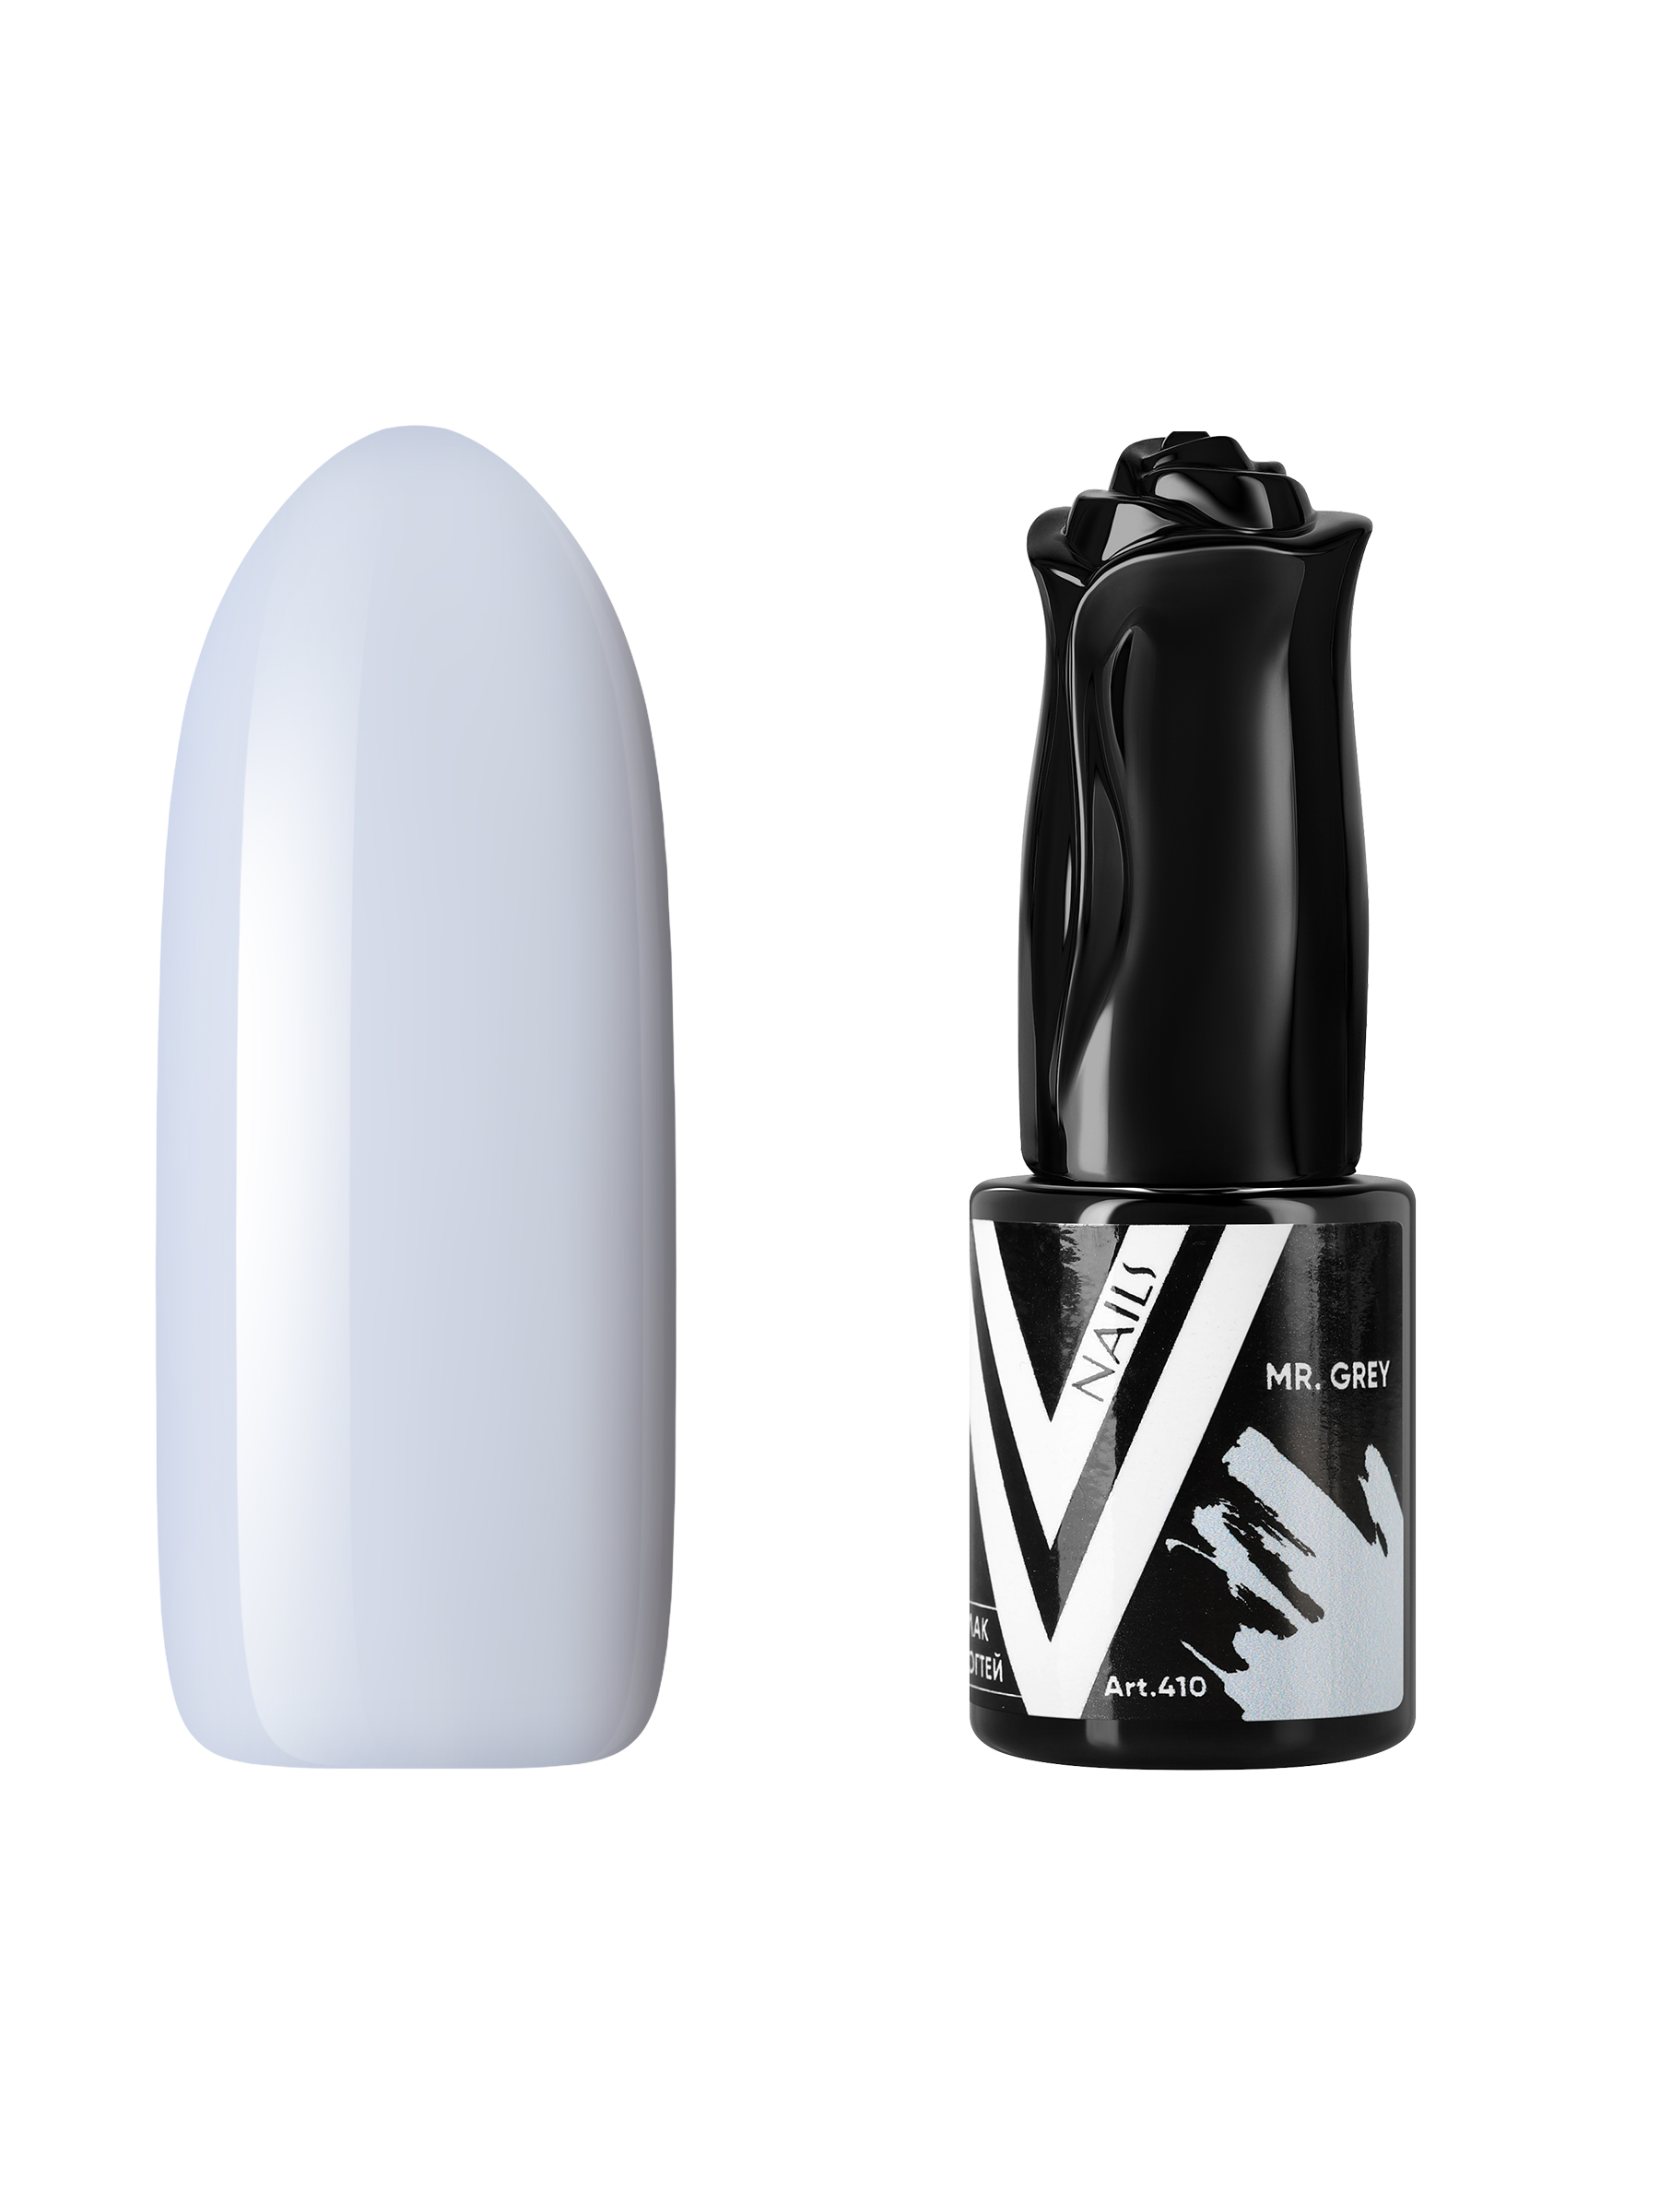 Гель-лак Vogue Nails светло-серый без эффектов плотный 10 мл коврик салона skyway mercedes benz w 210 1995 2003 левый руль 4шт eva серый s01706324